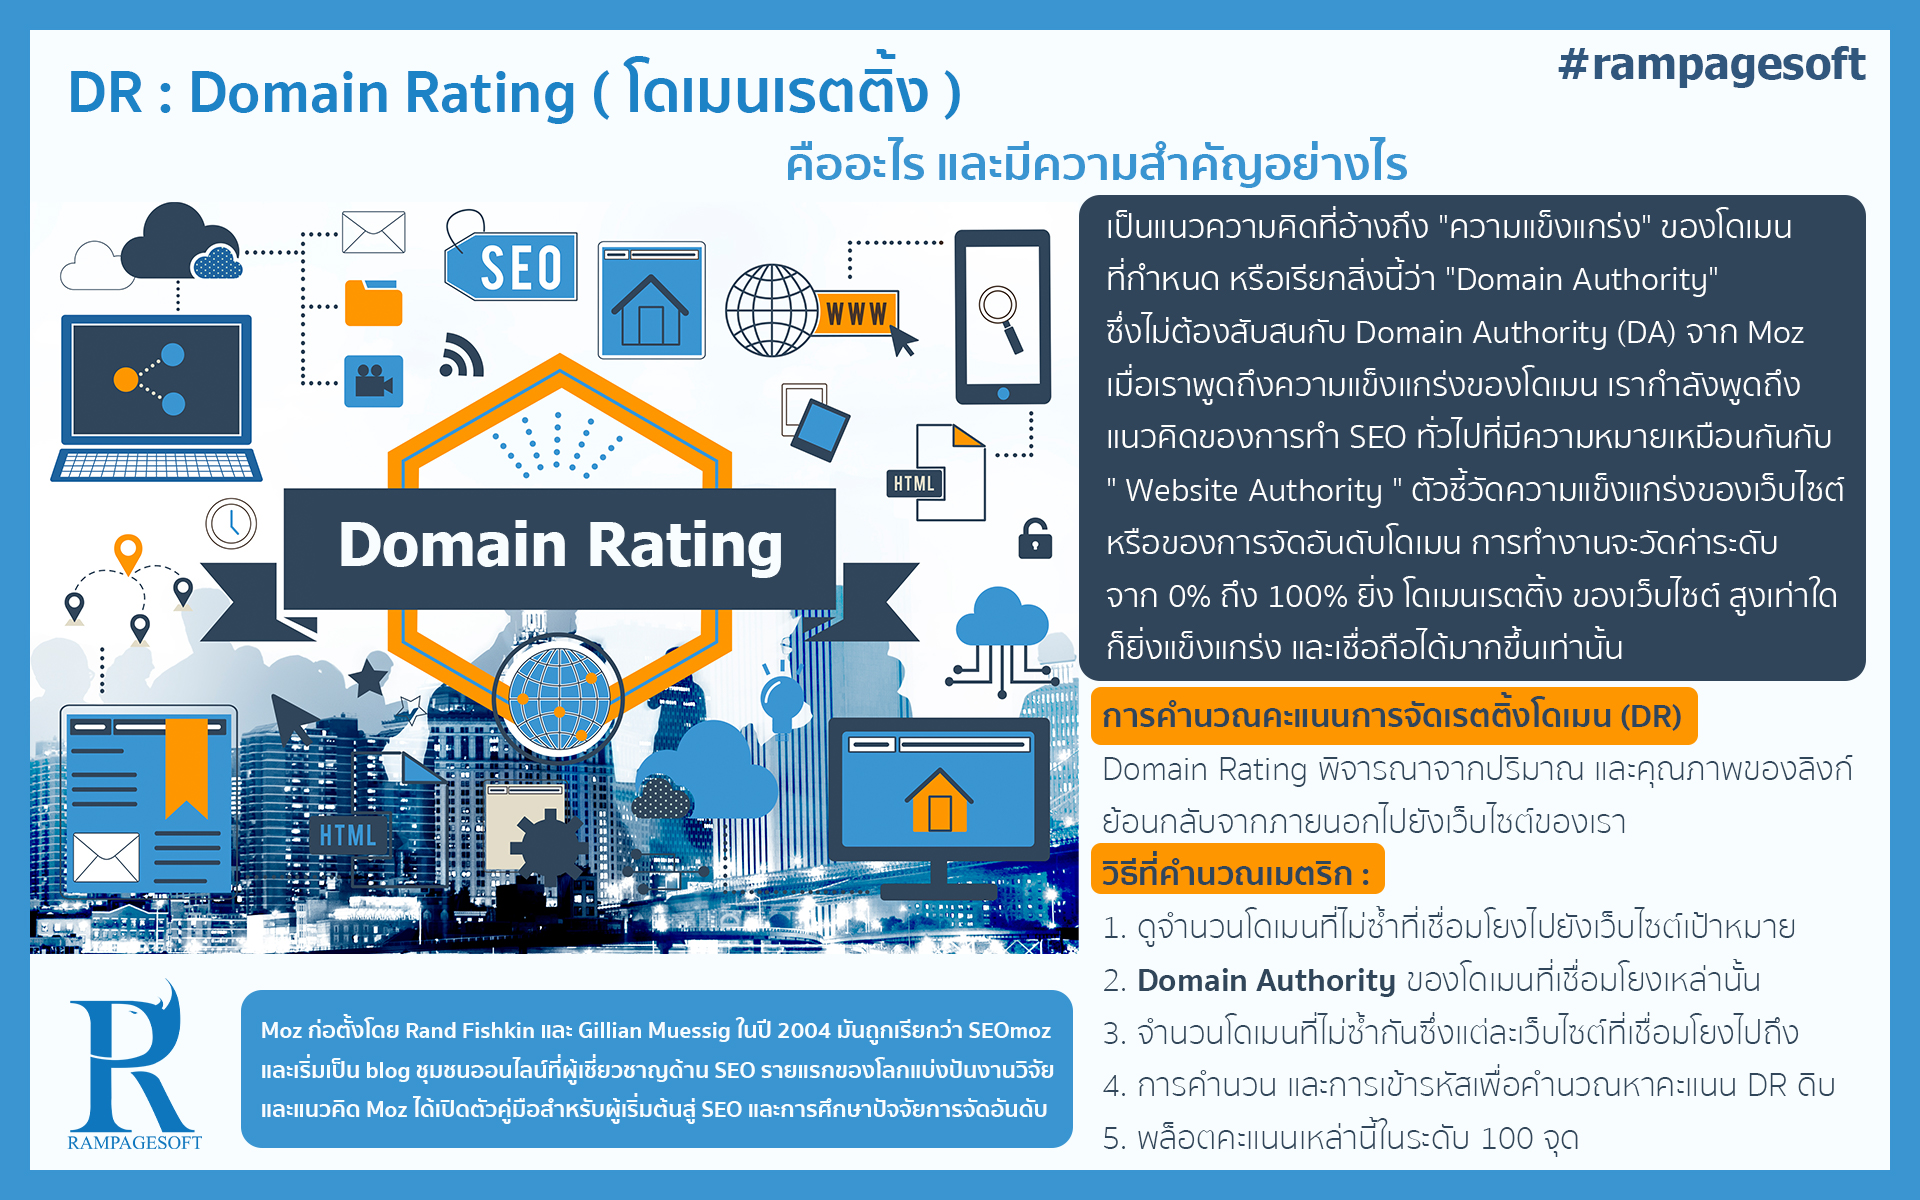 รับทําเว็บไซต์ เว็บขยายสายงาน DR : Domain Rating ( โดเมนเรตติ้ง ) | TTT-WEBSITE 